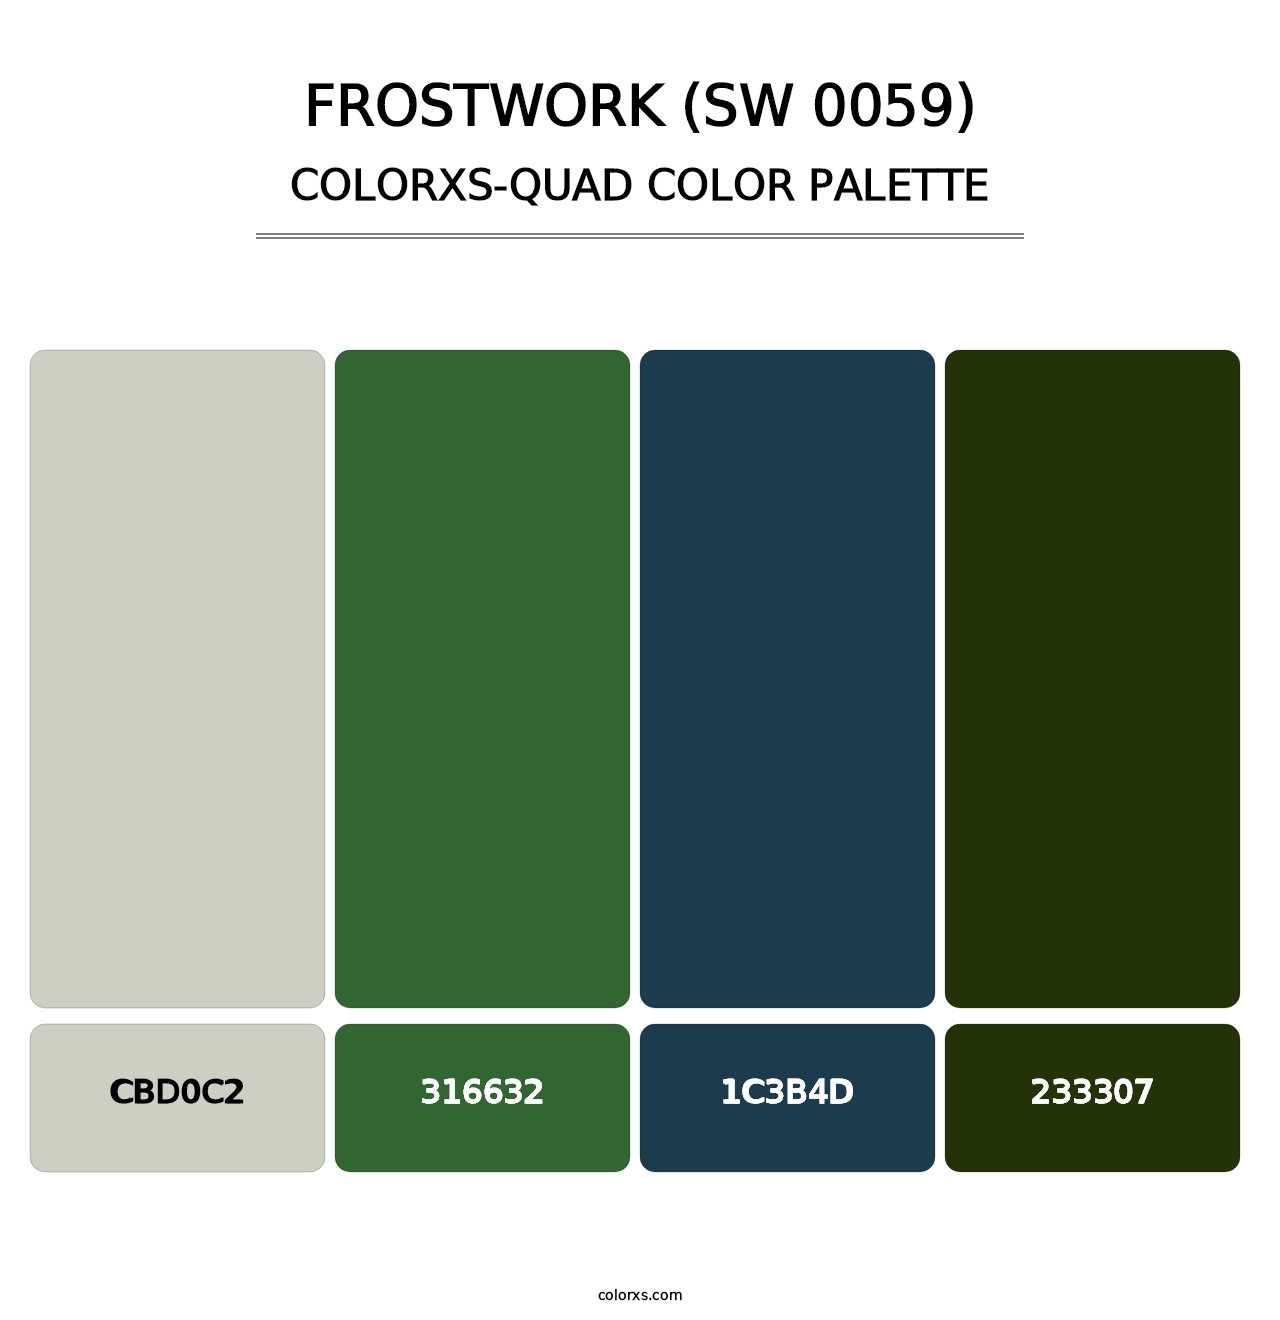 Frostwork (SW 0059) - Colorxs Quad Palette